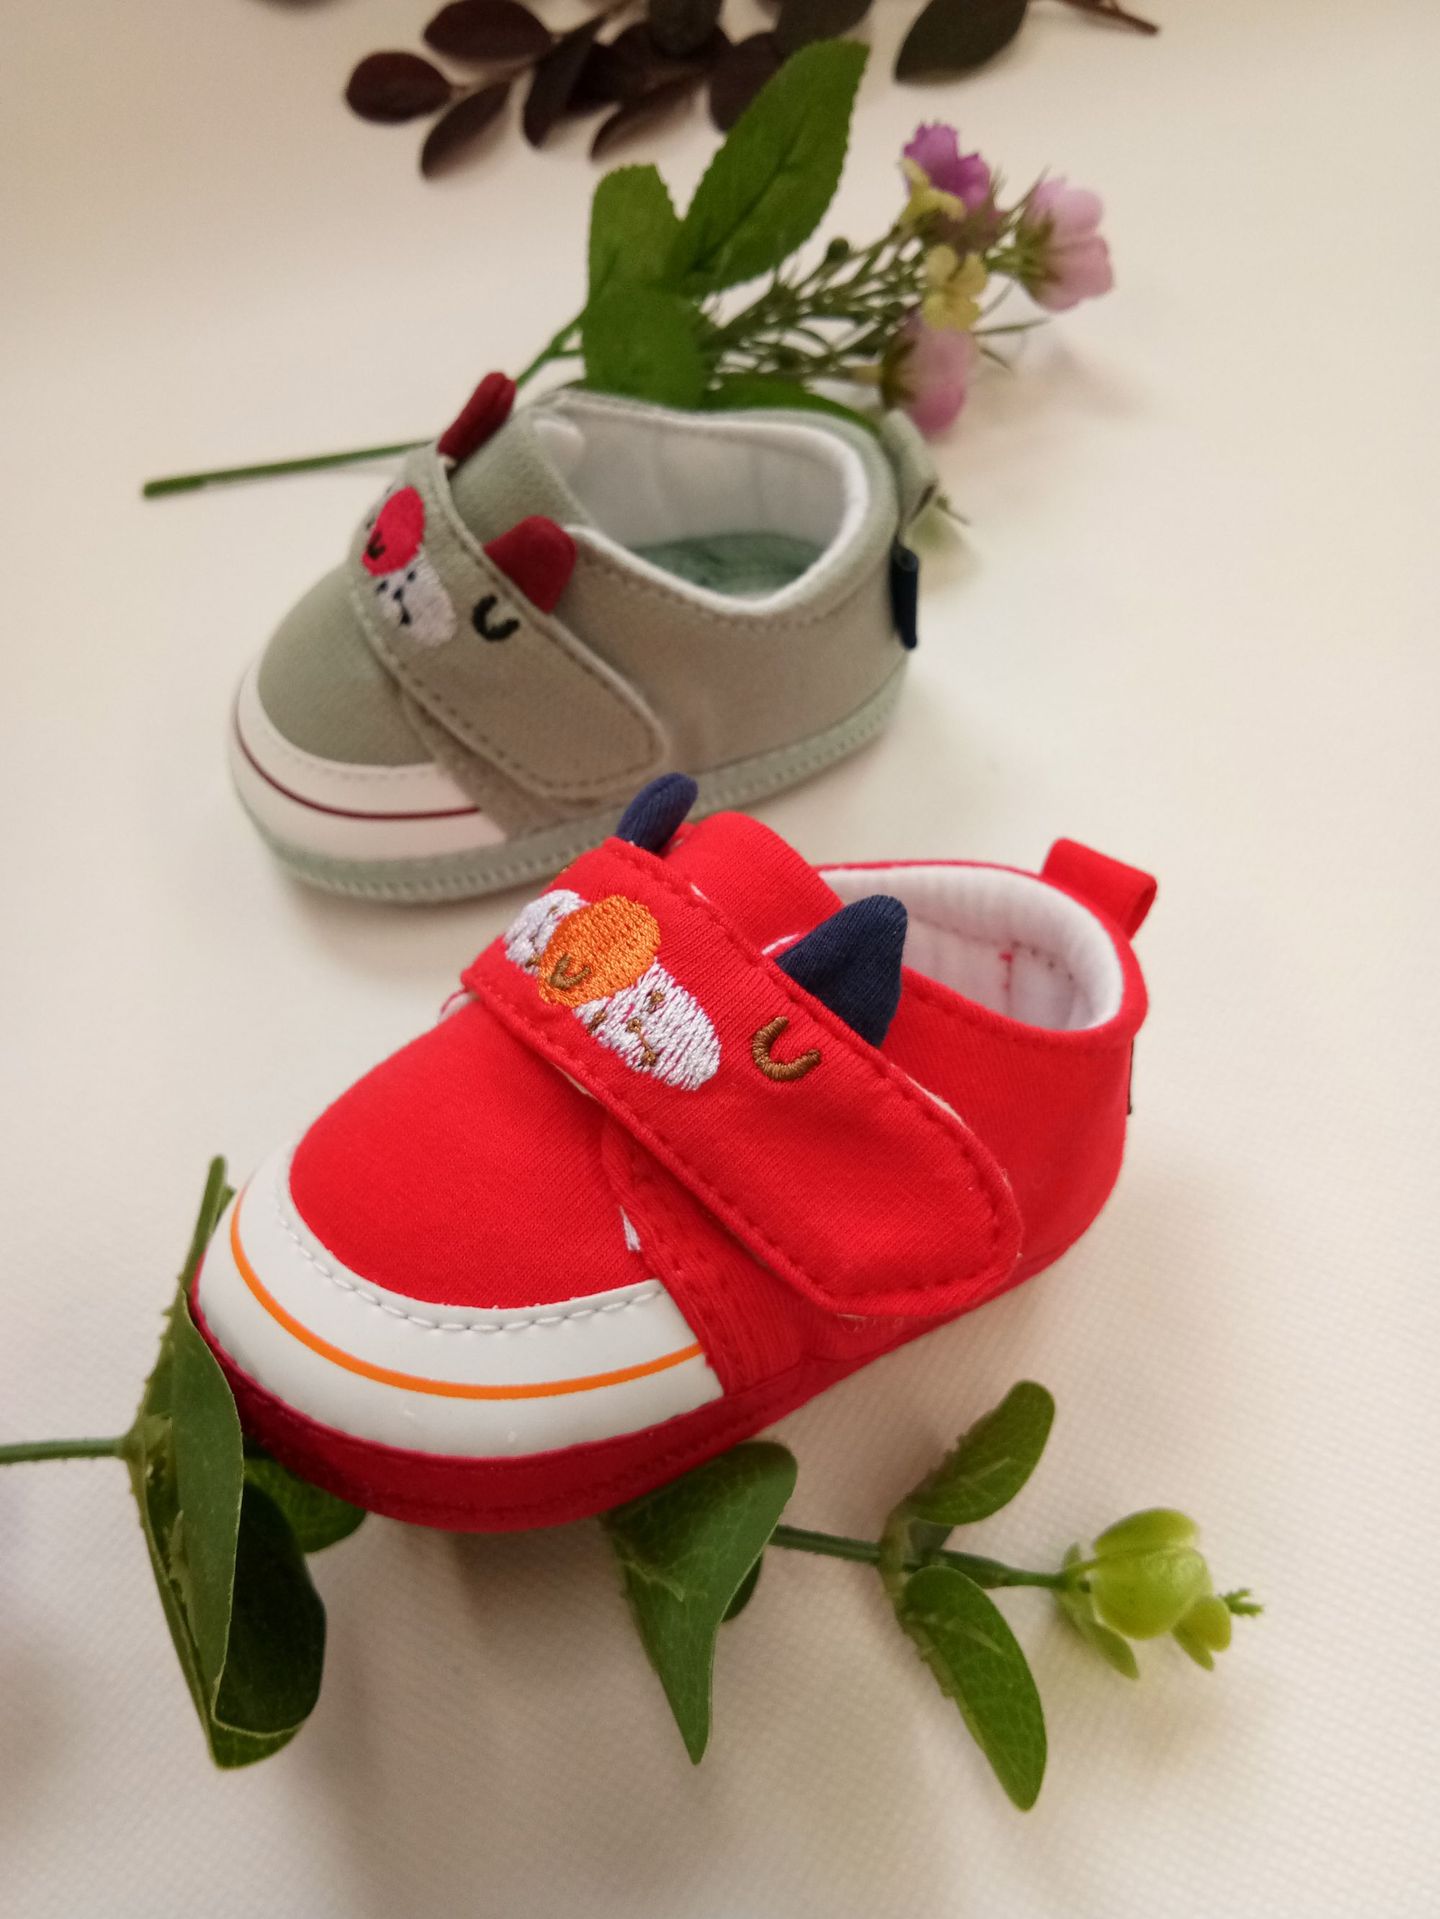 2018新款婴儿秋鞋 魔术贴学步鞋 0-1岁婴儿学步鞋 透气棉布鞋示例图7